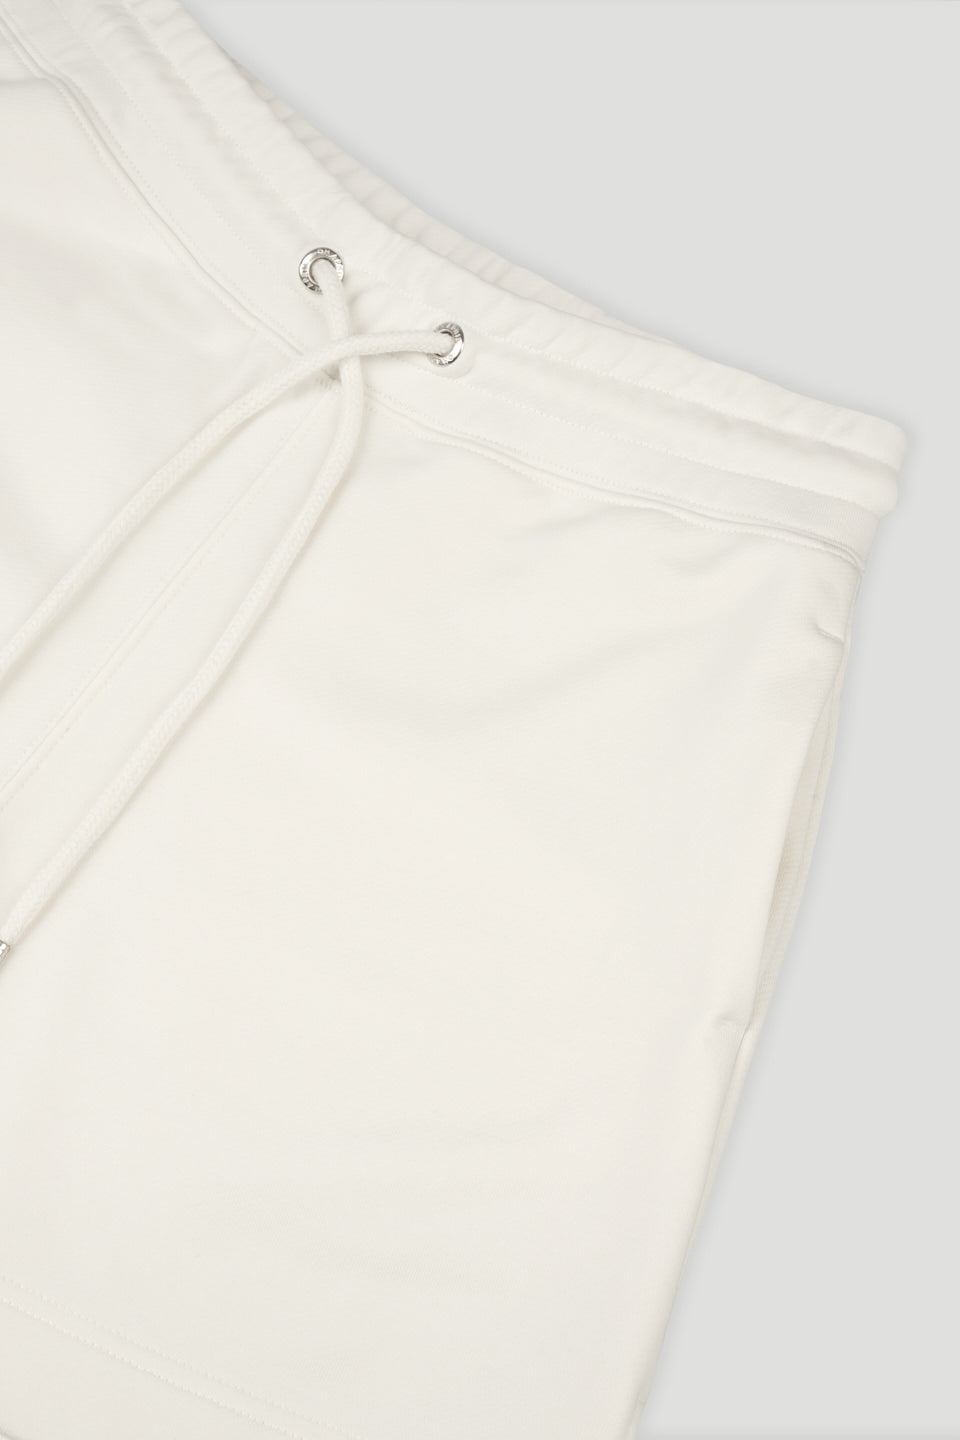 Lavi Shorts Off White